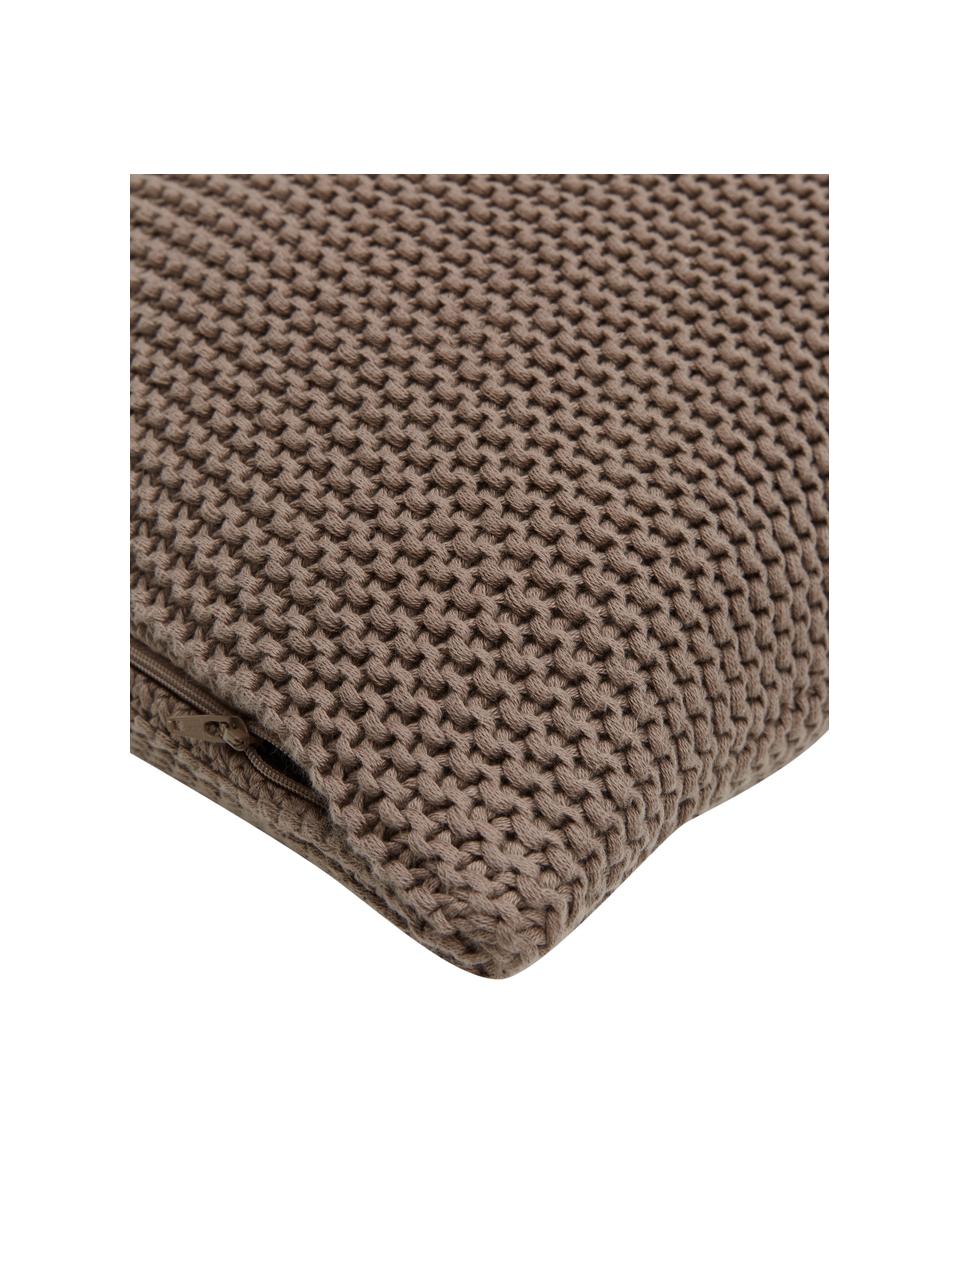 Housse de coussin tricotée en coton bio brun clair Adalyn, 100 % coton bio, certifié GOTS, Brun, larg. 50 x long. 50 cm